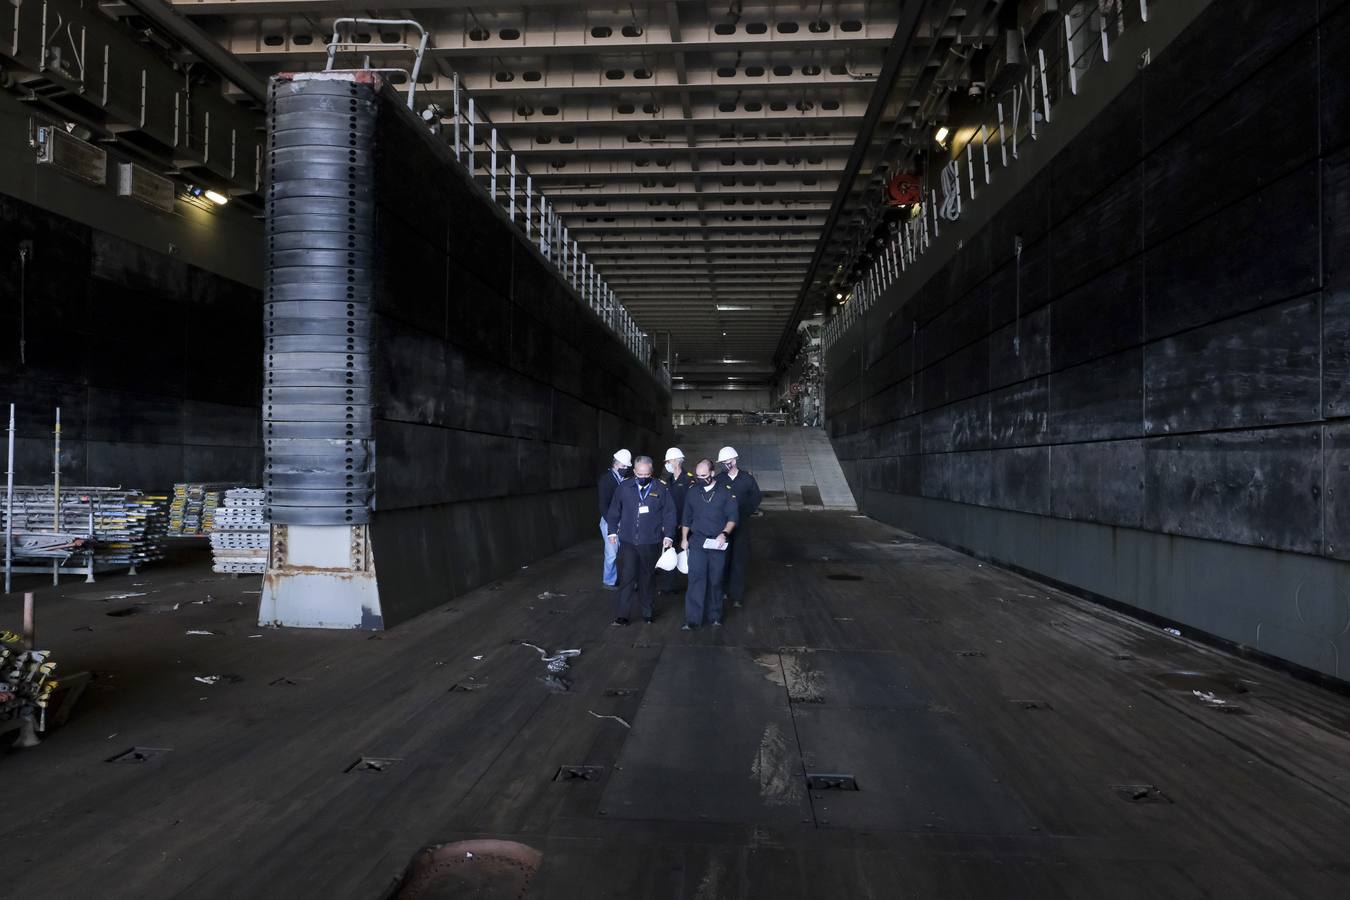 FOTOS: El portaeronaves ‘Juan Carlos I’ se somete a una profunda revisión en el astillero de Puerto Real